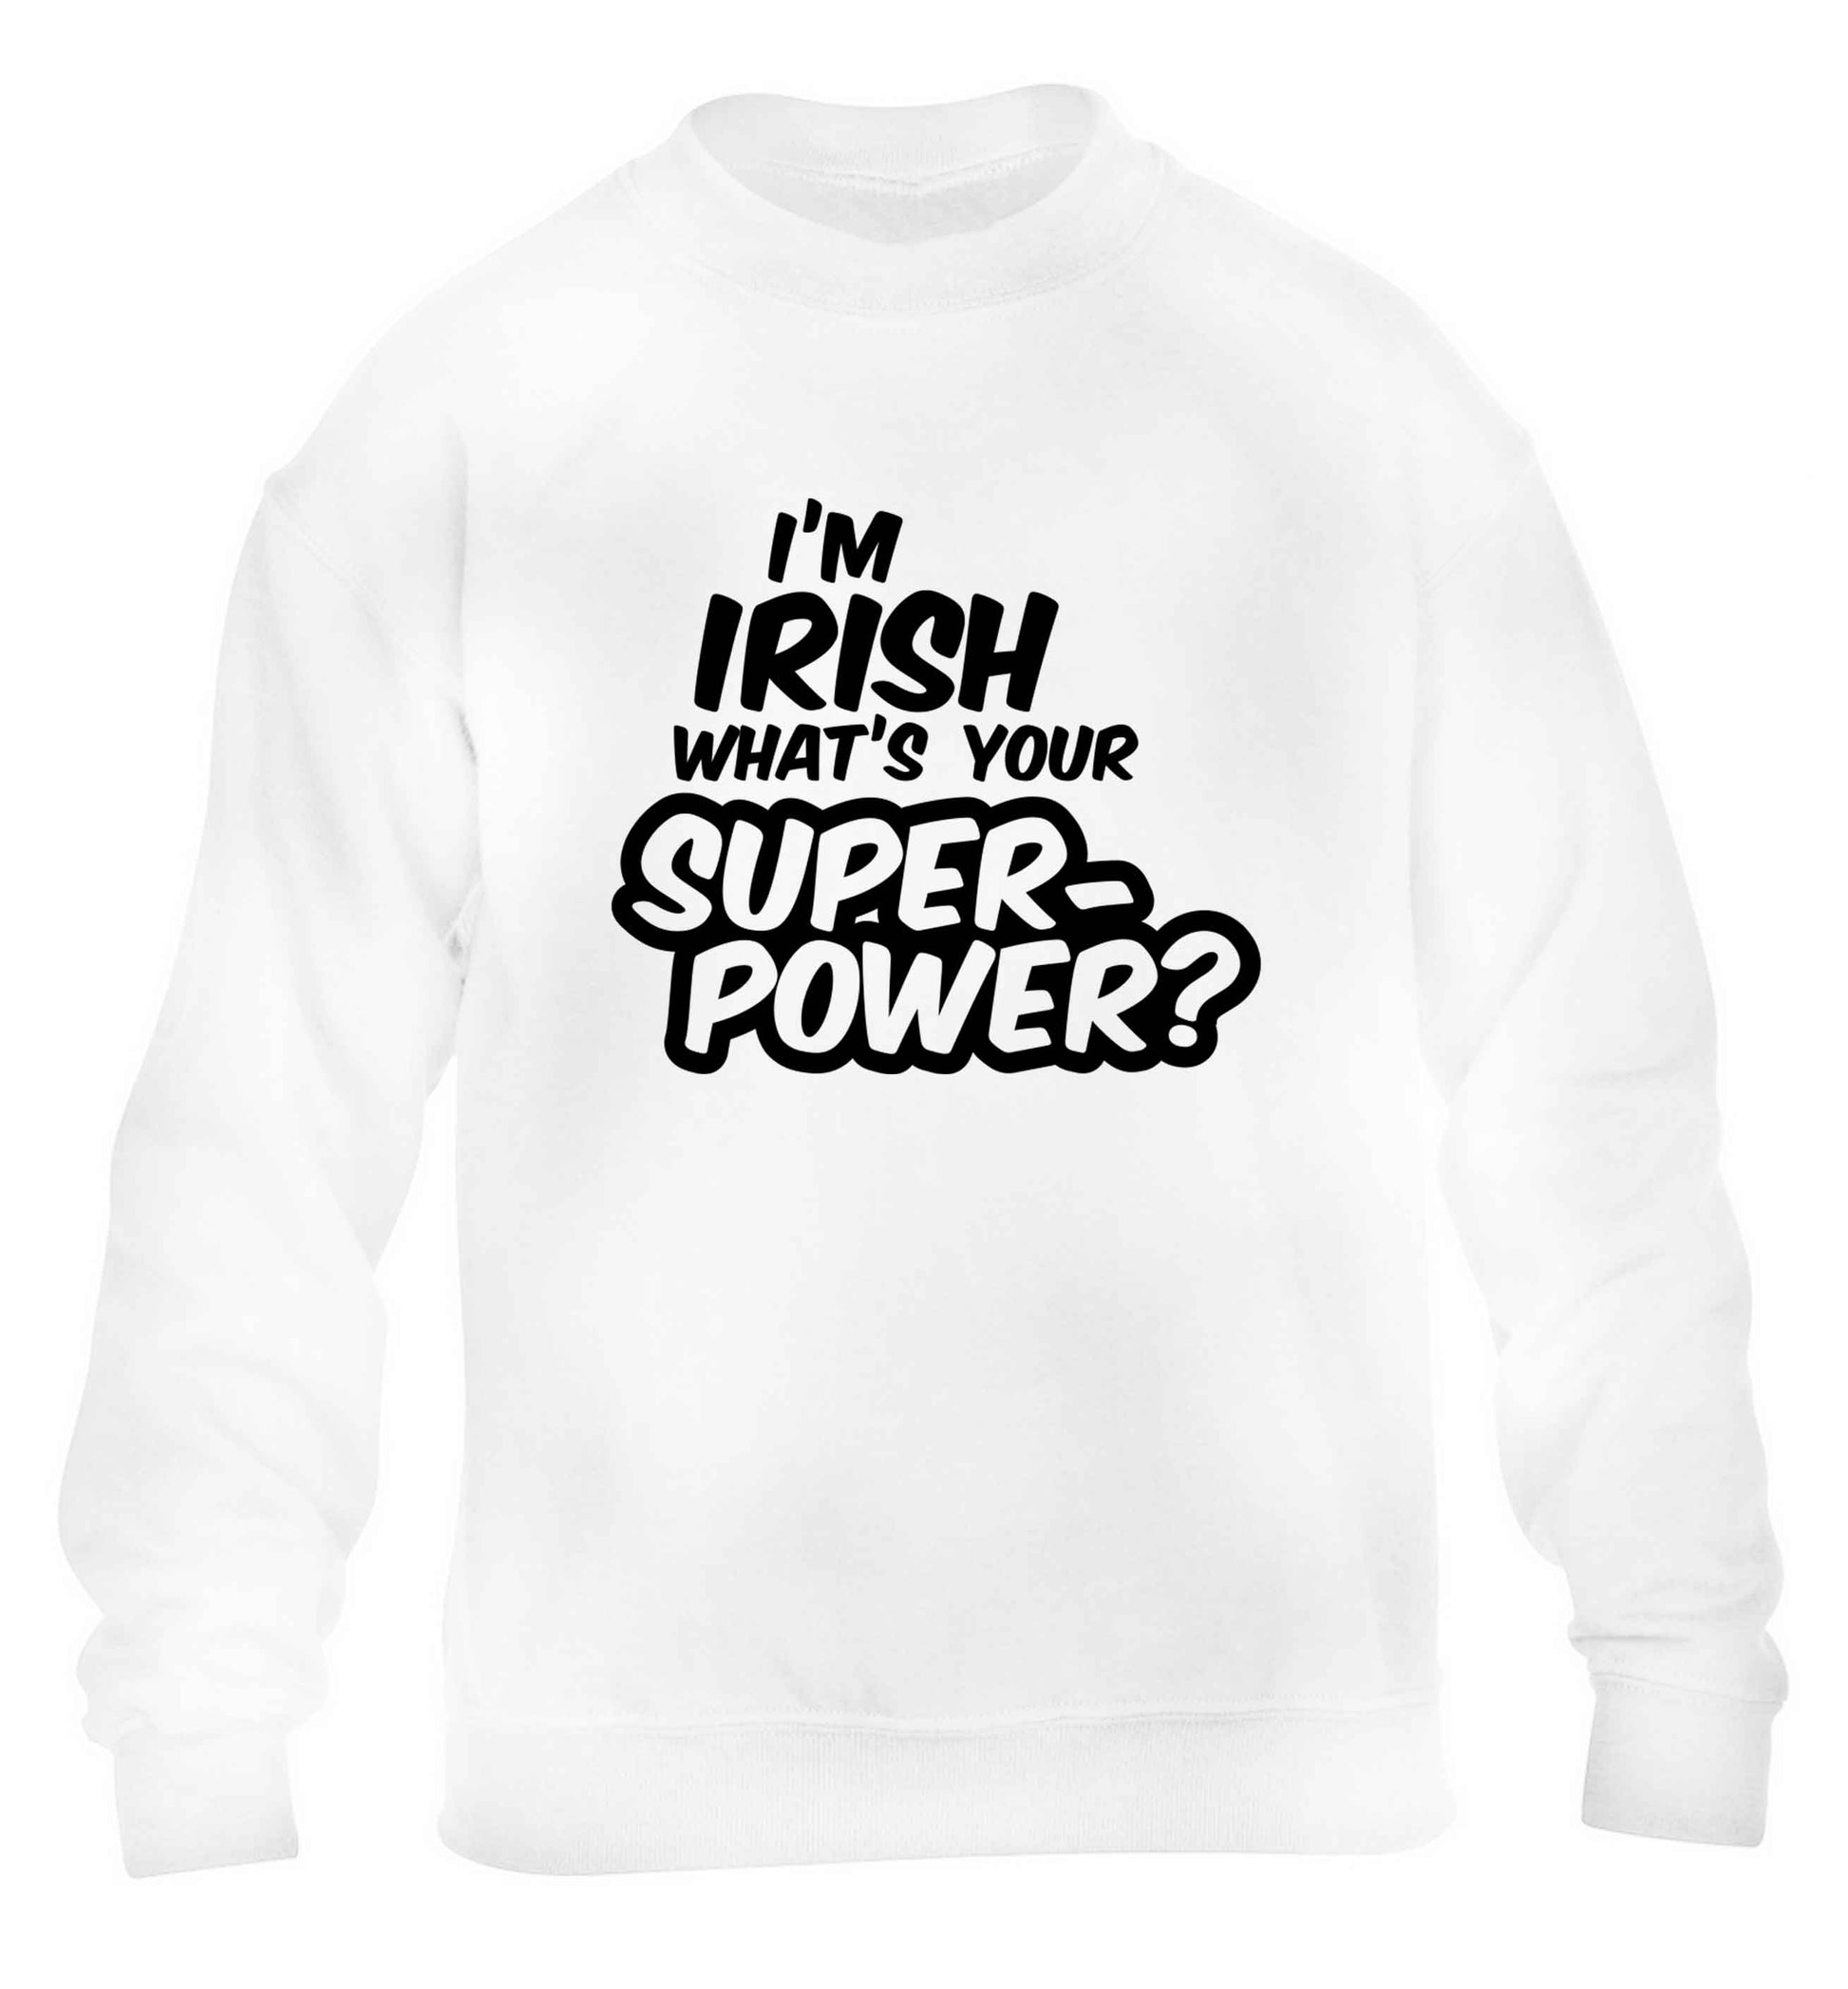 I'm Irish what's your superpower? children's white sweater 12-13 Years